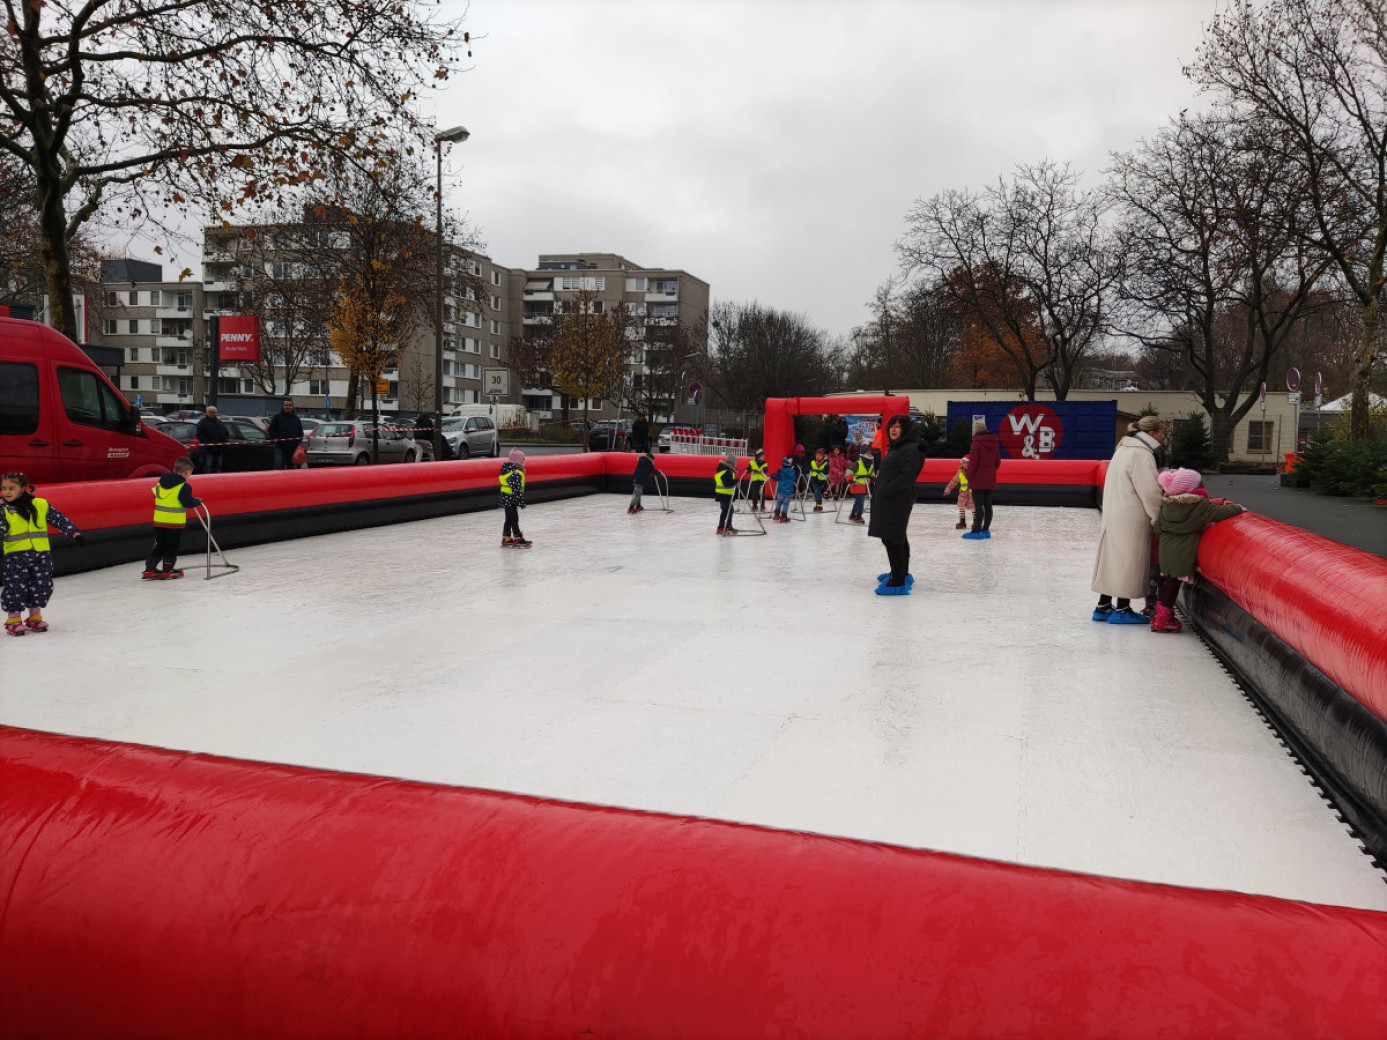 Kinder der KiTa Speckestr. 15 bei Westerfilde on Ice in Dortmund Westerfilde & Bodelschwingh